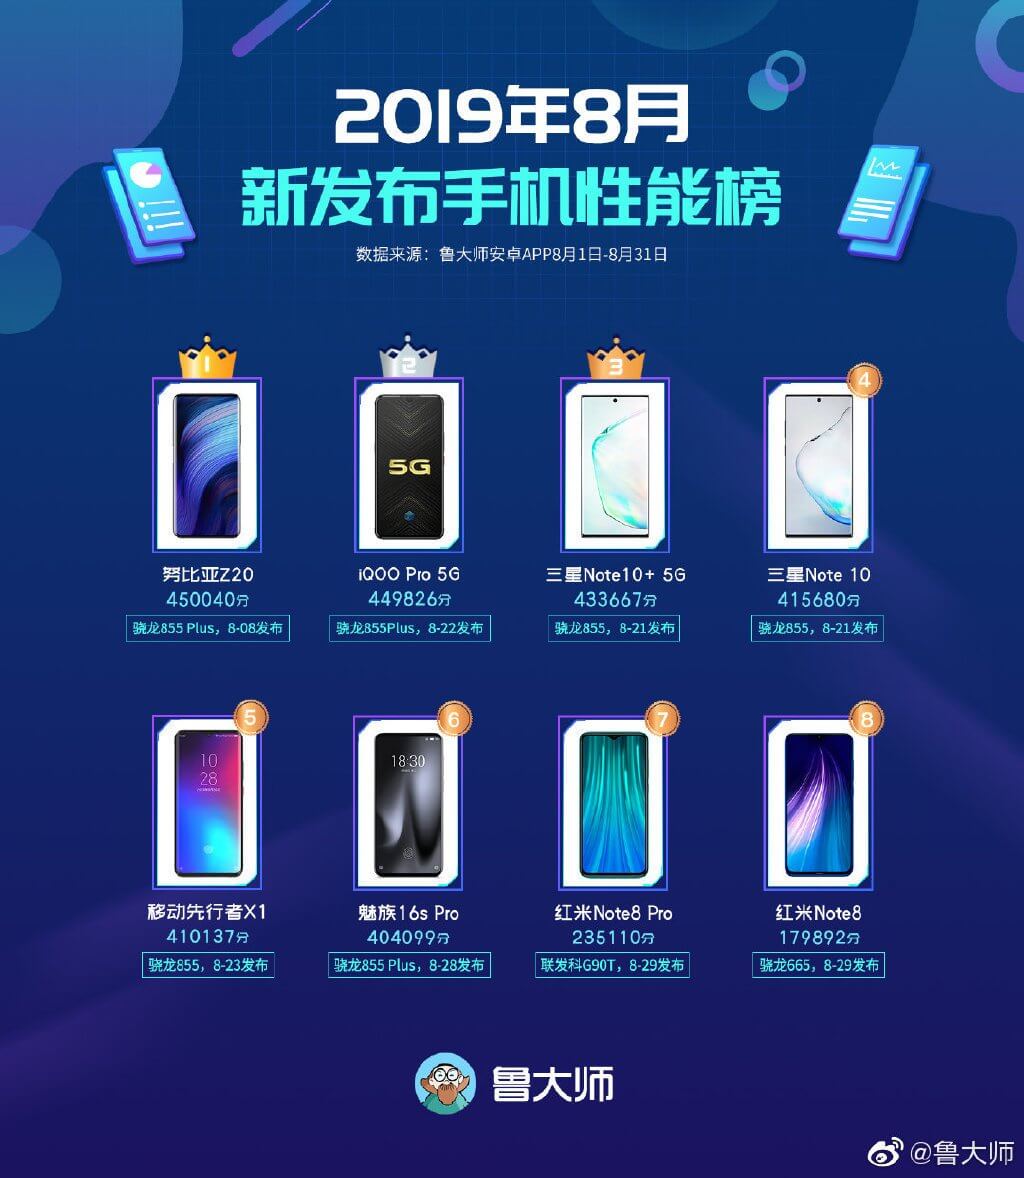 ТОП-8 лучших смартфонов за август 2019 года по версии Master Lu